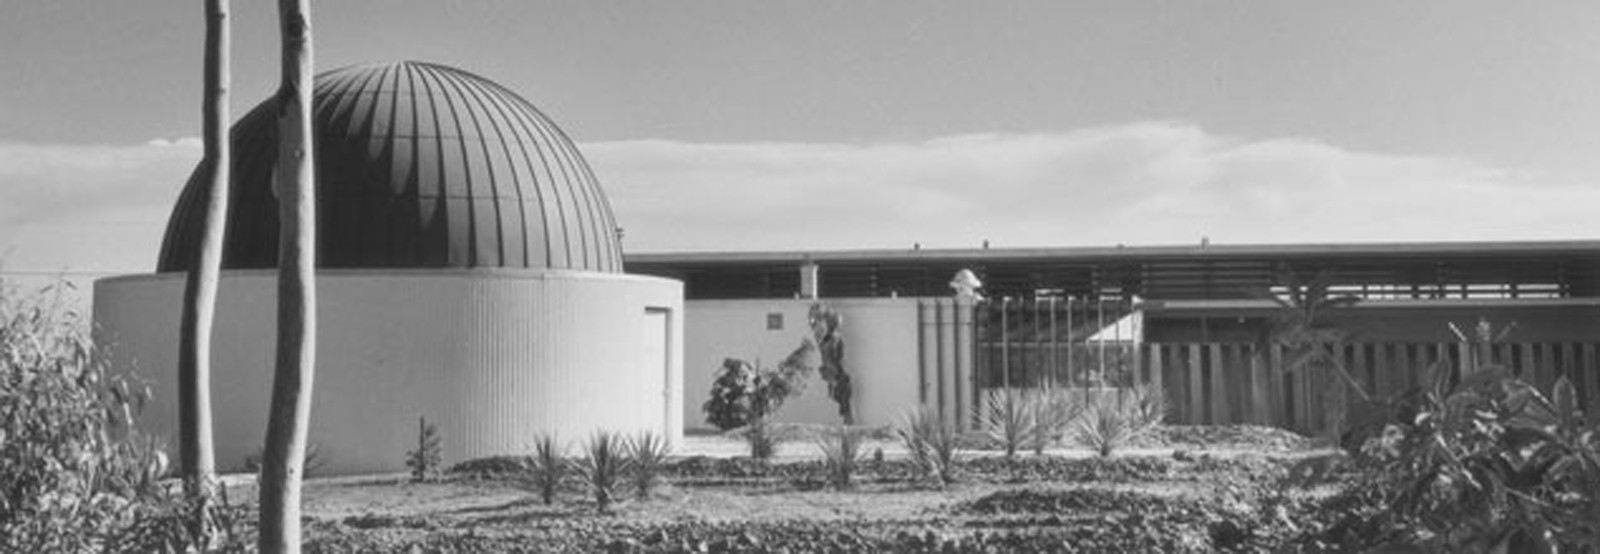 Detail of the Orange Coast College Planetarium/Science wing